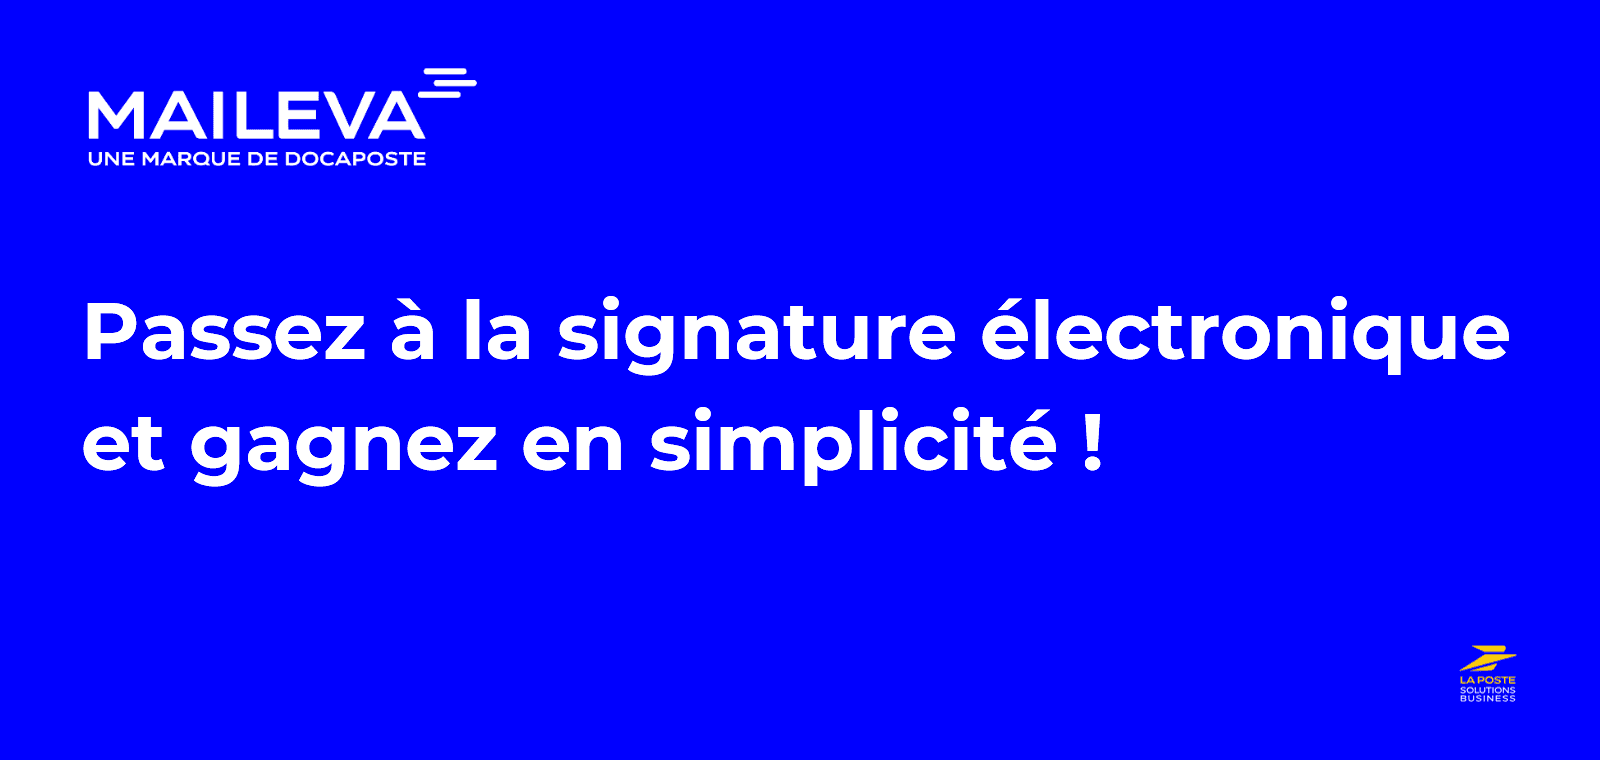 Passez à la signature électronique et gagnez en simplicité !